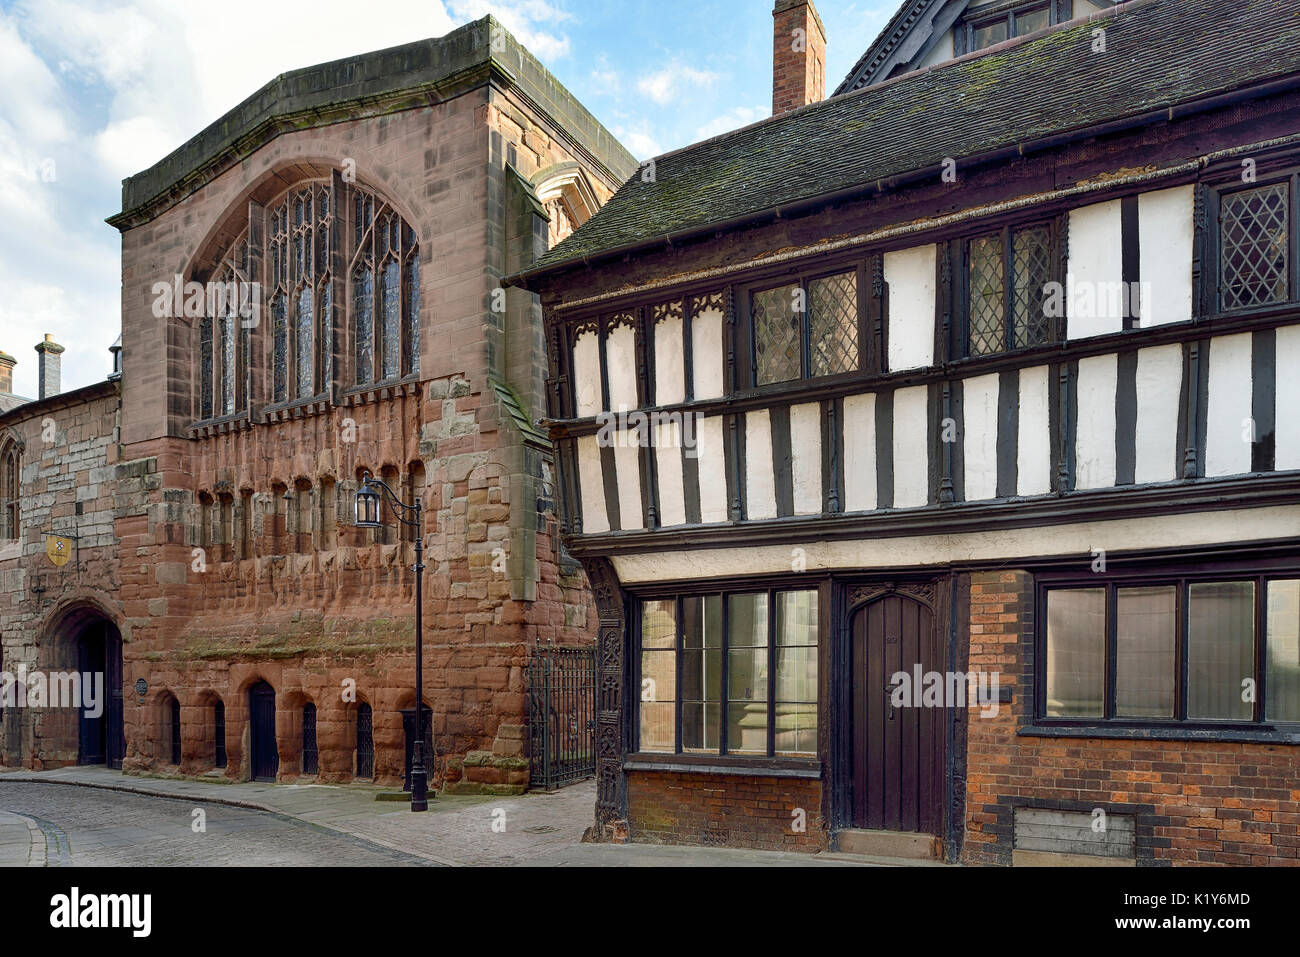 Le gîte & St Mary's guildhall, bayley lane, Coventry au début du 16e siècle bâtiments classés Grade II Banque D'Images